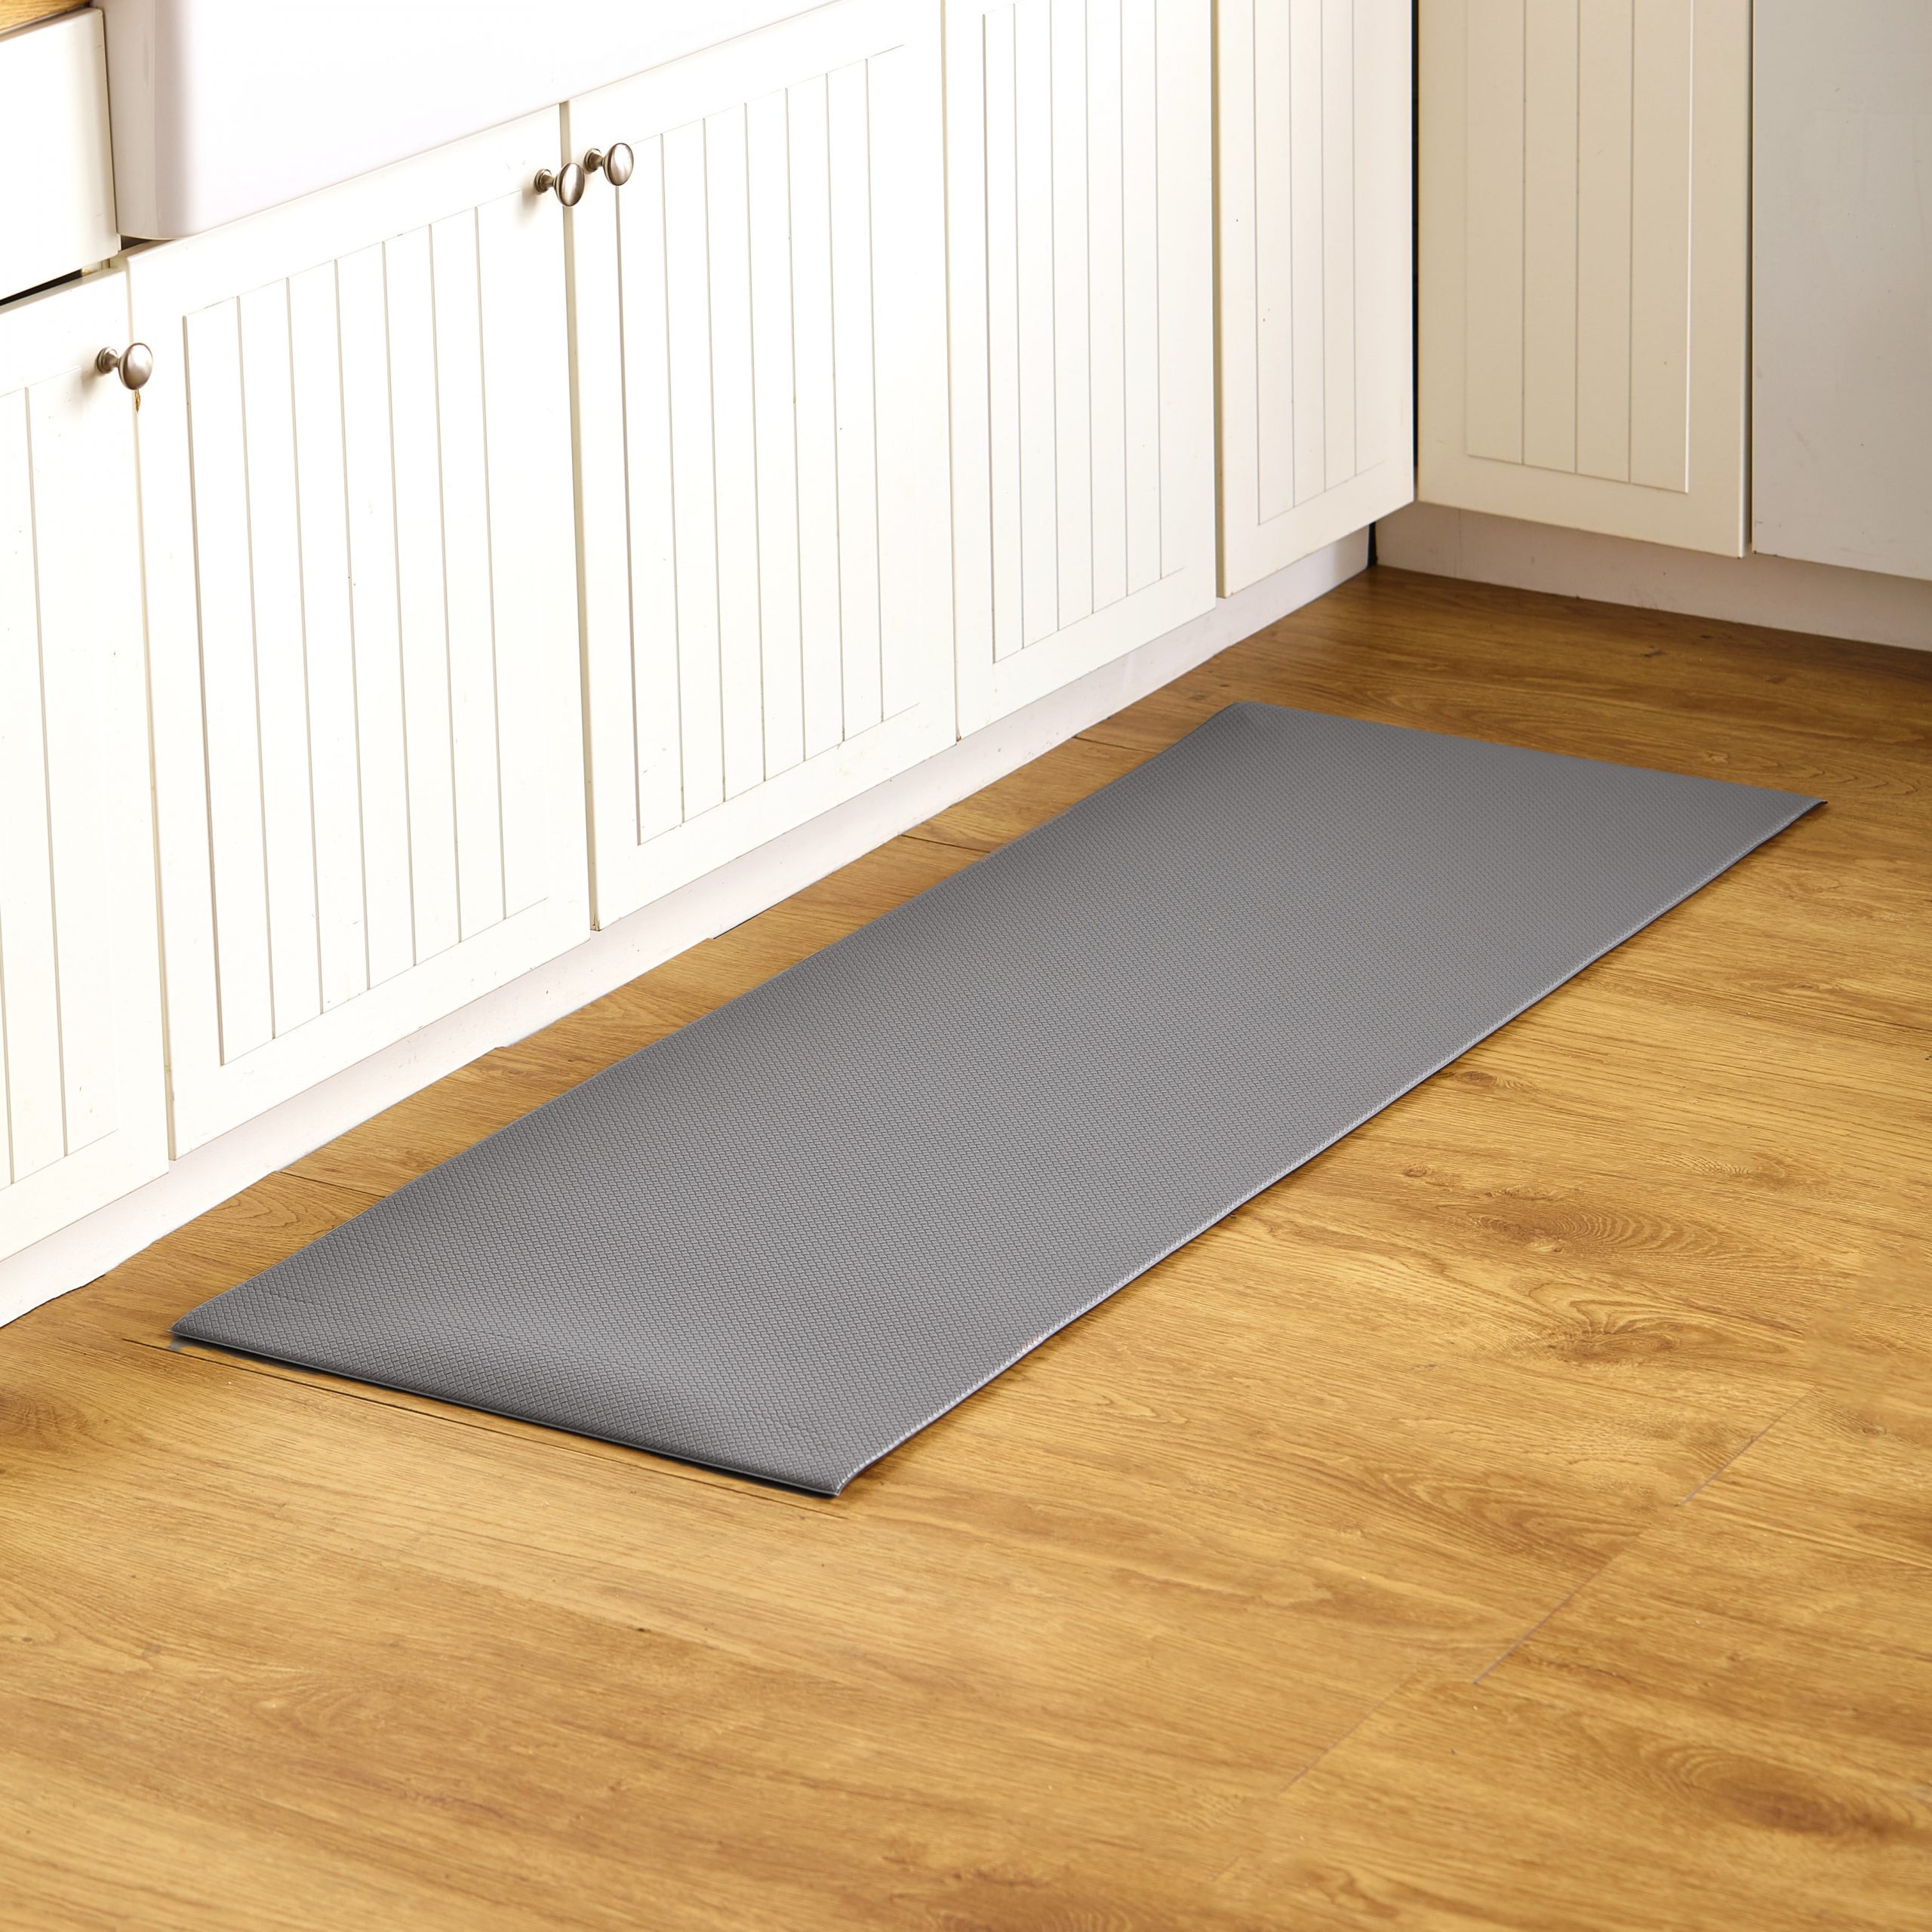 Waterproof Anti Fatigue Kitchen Floor Comfort Runner